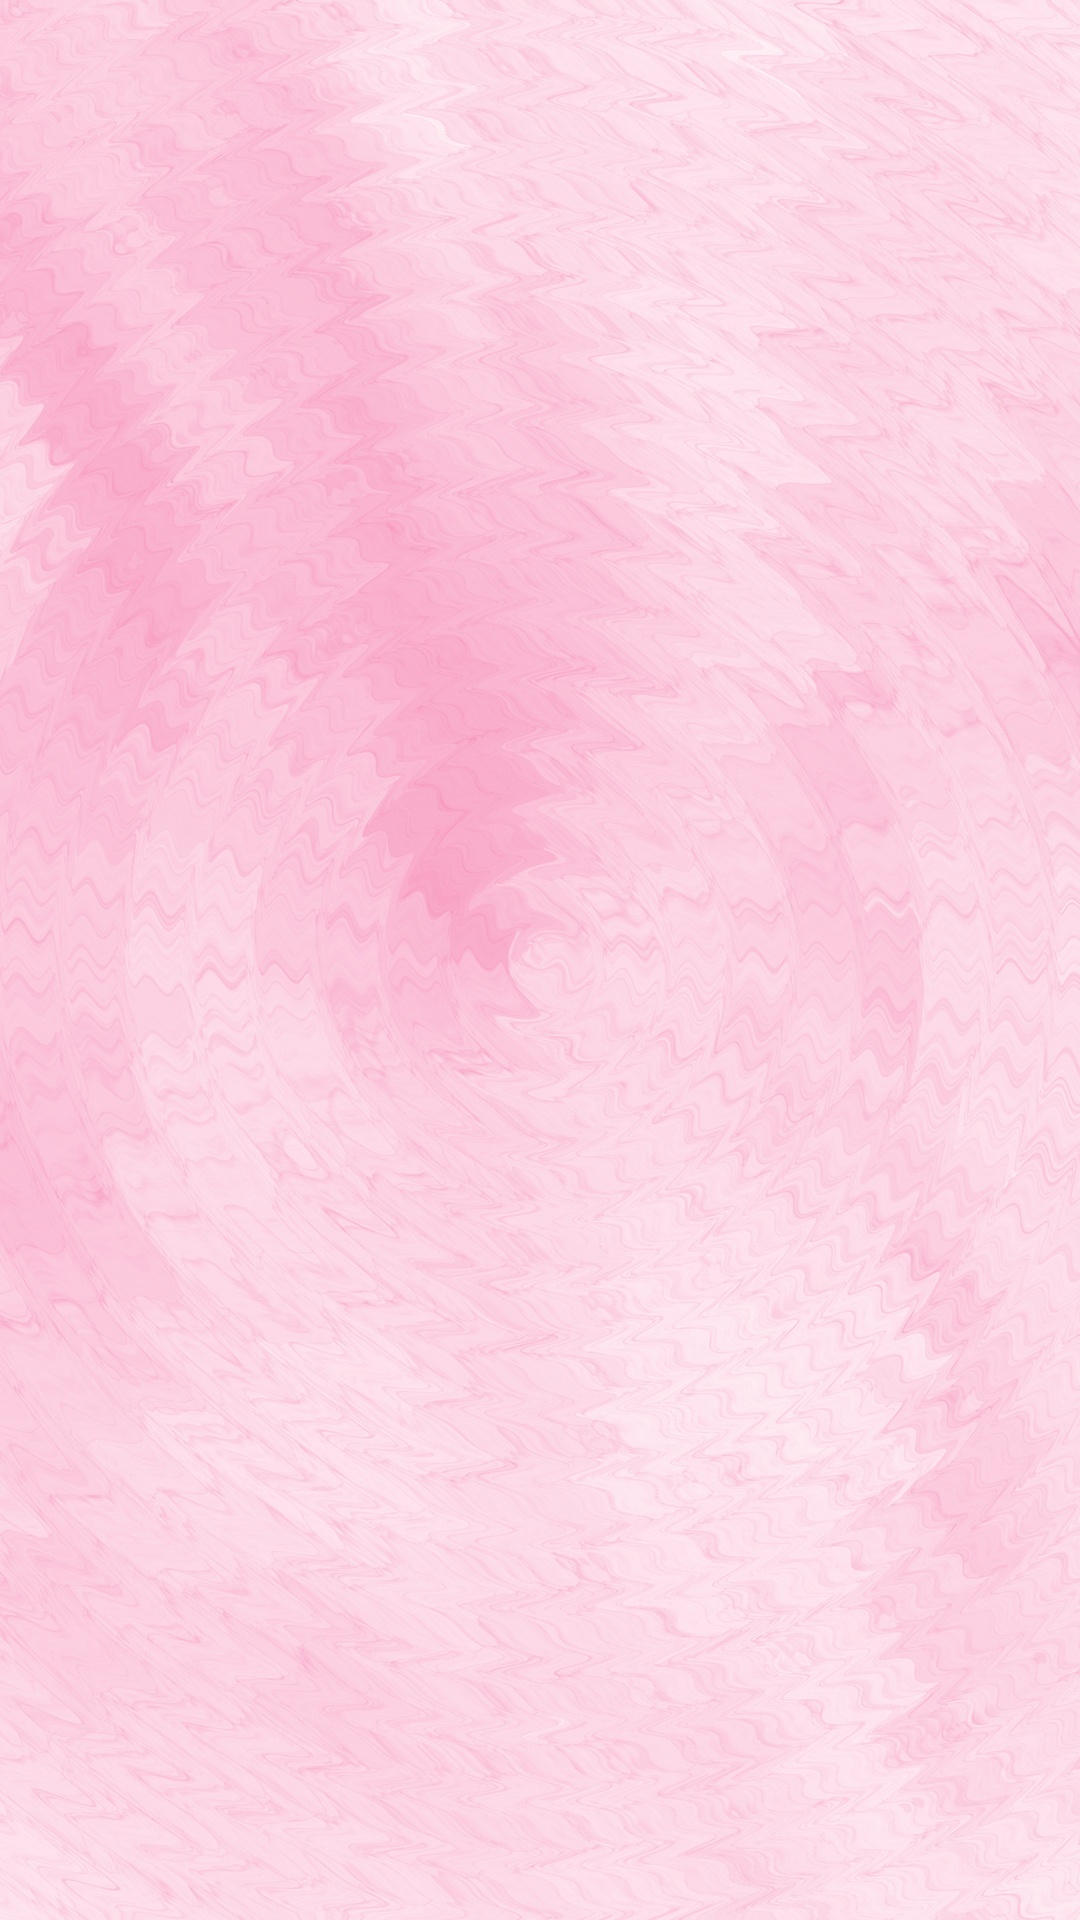 粉红色 line 换不完的背景手机壁纸.